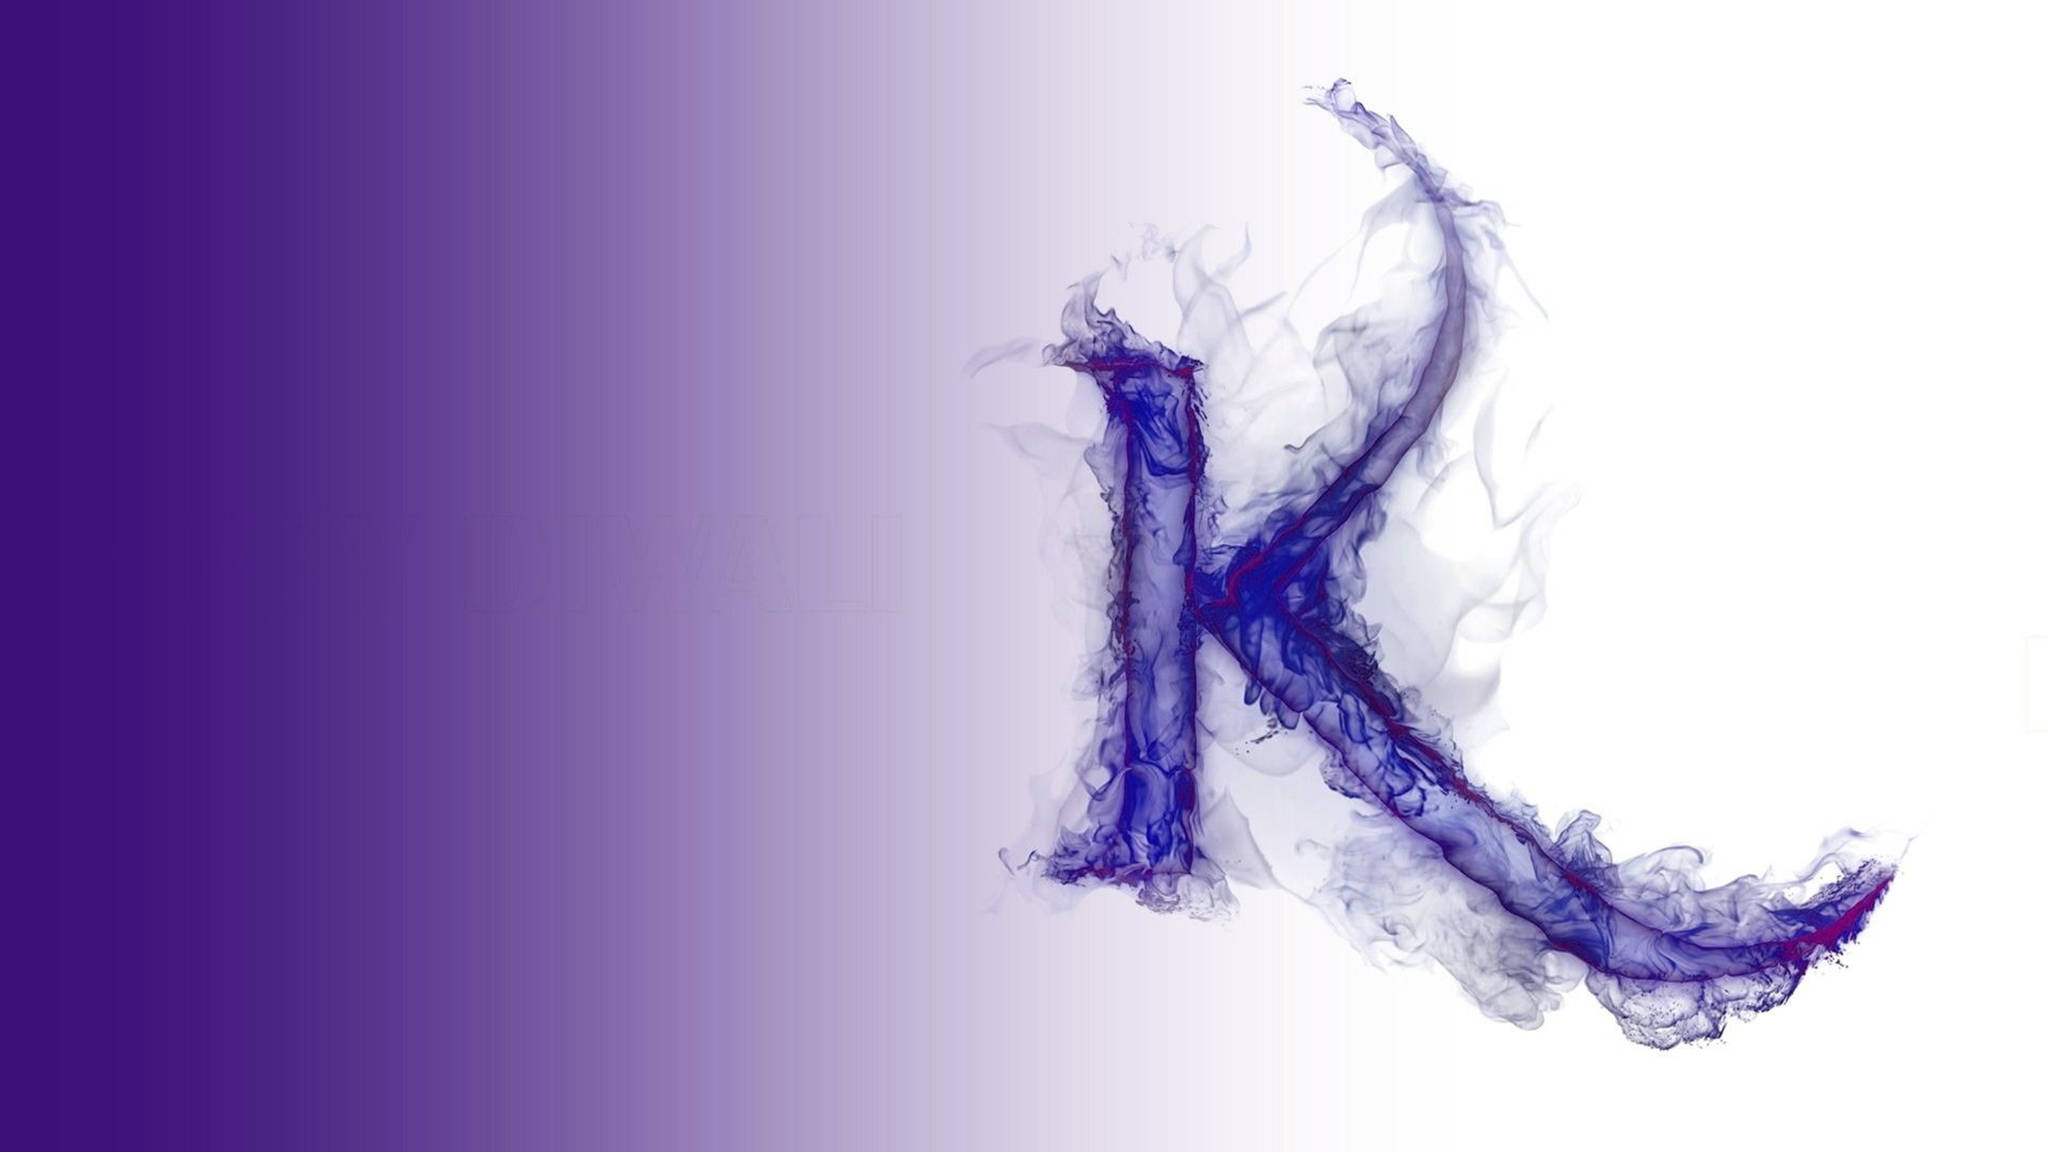 the letter k in purple